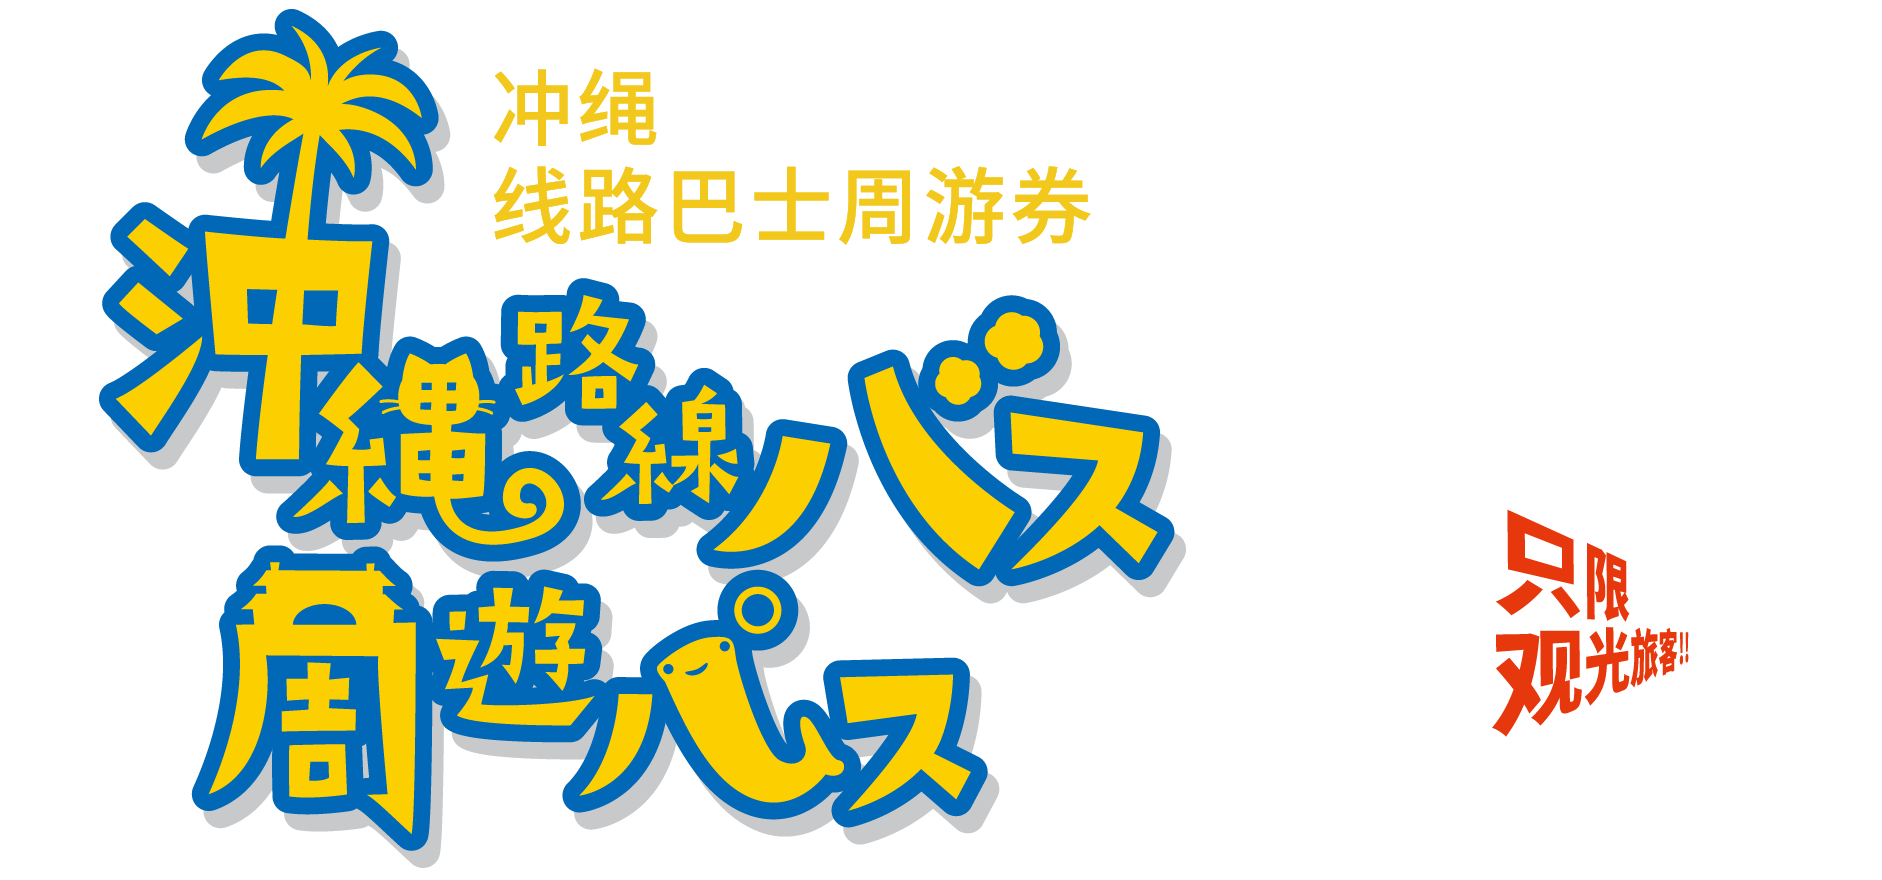 冲绳 线路巴士周游券 享受悠闲时光 无限乘坐巴士之旅。